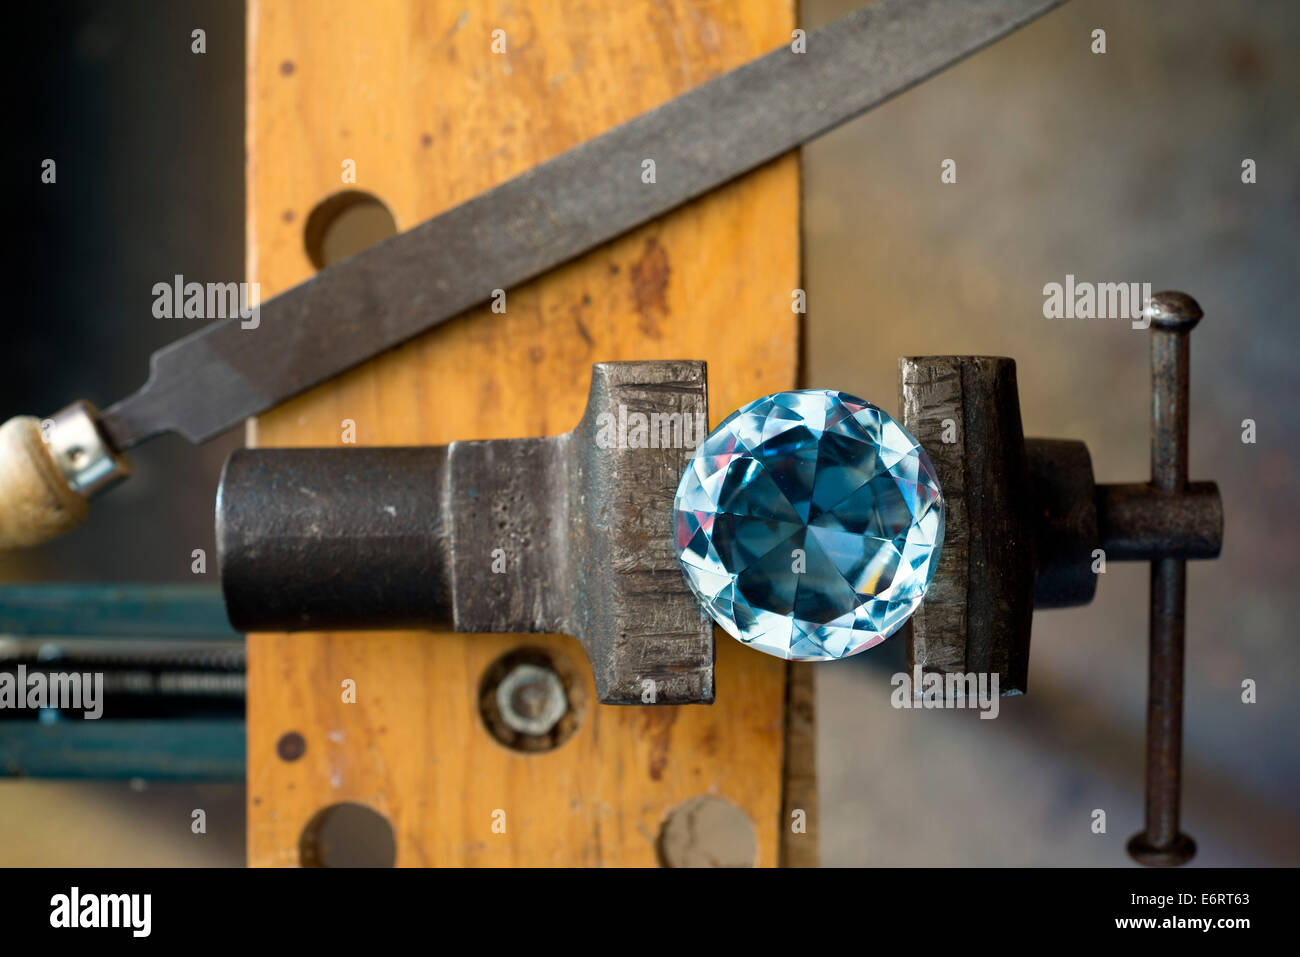 diamond shaped glass subject workbench Stock Photo